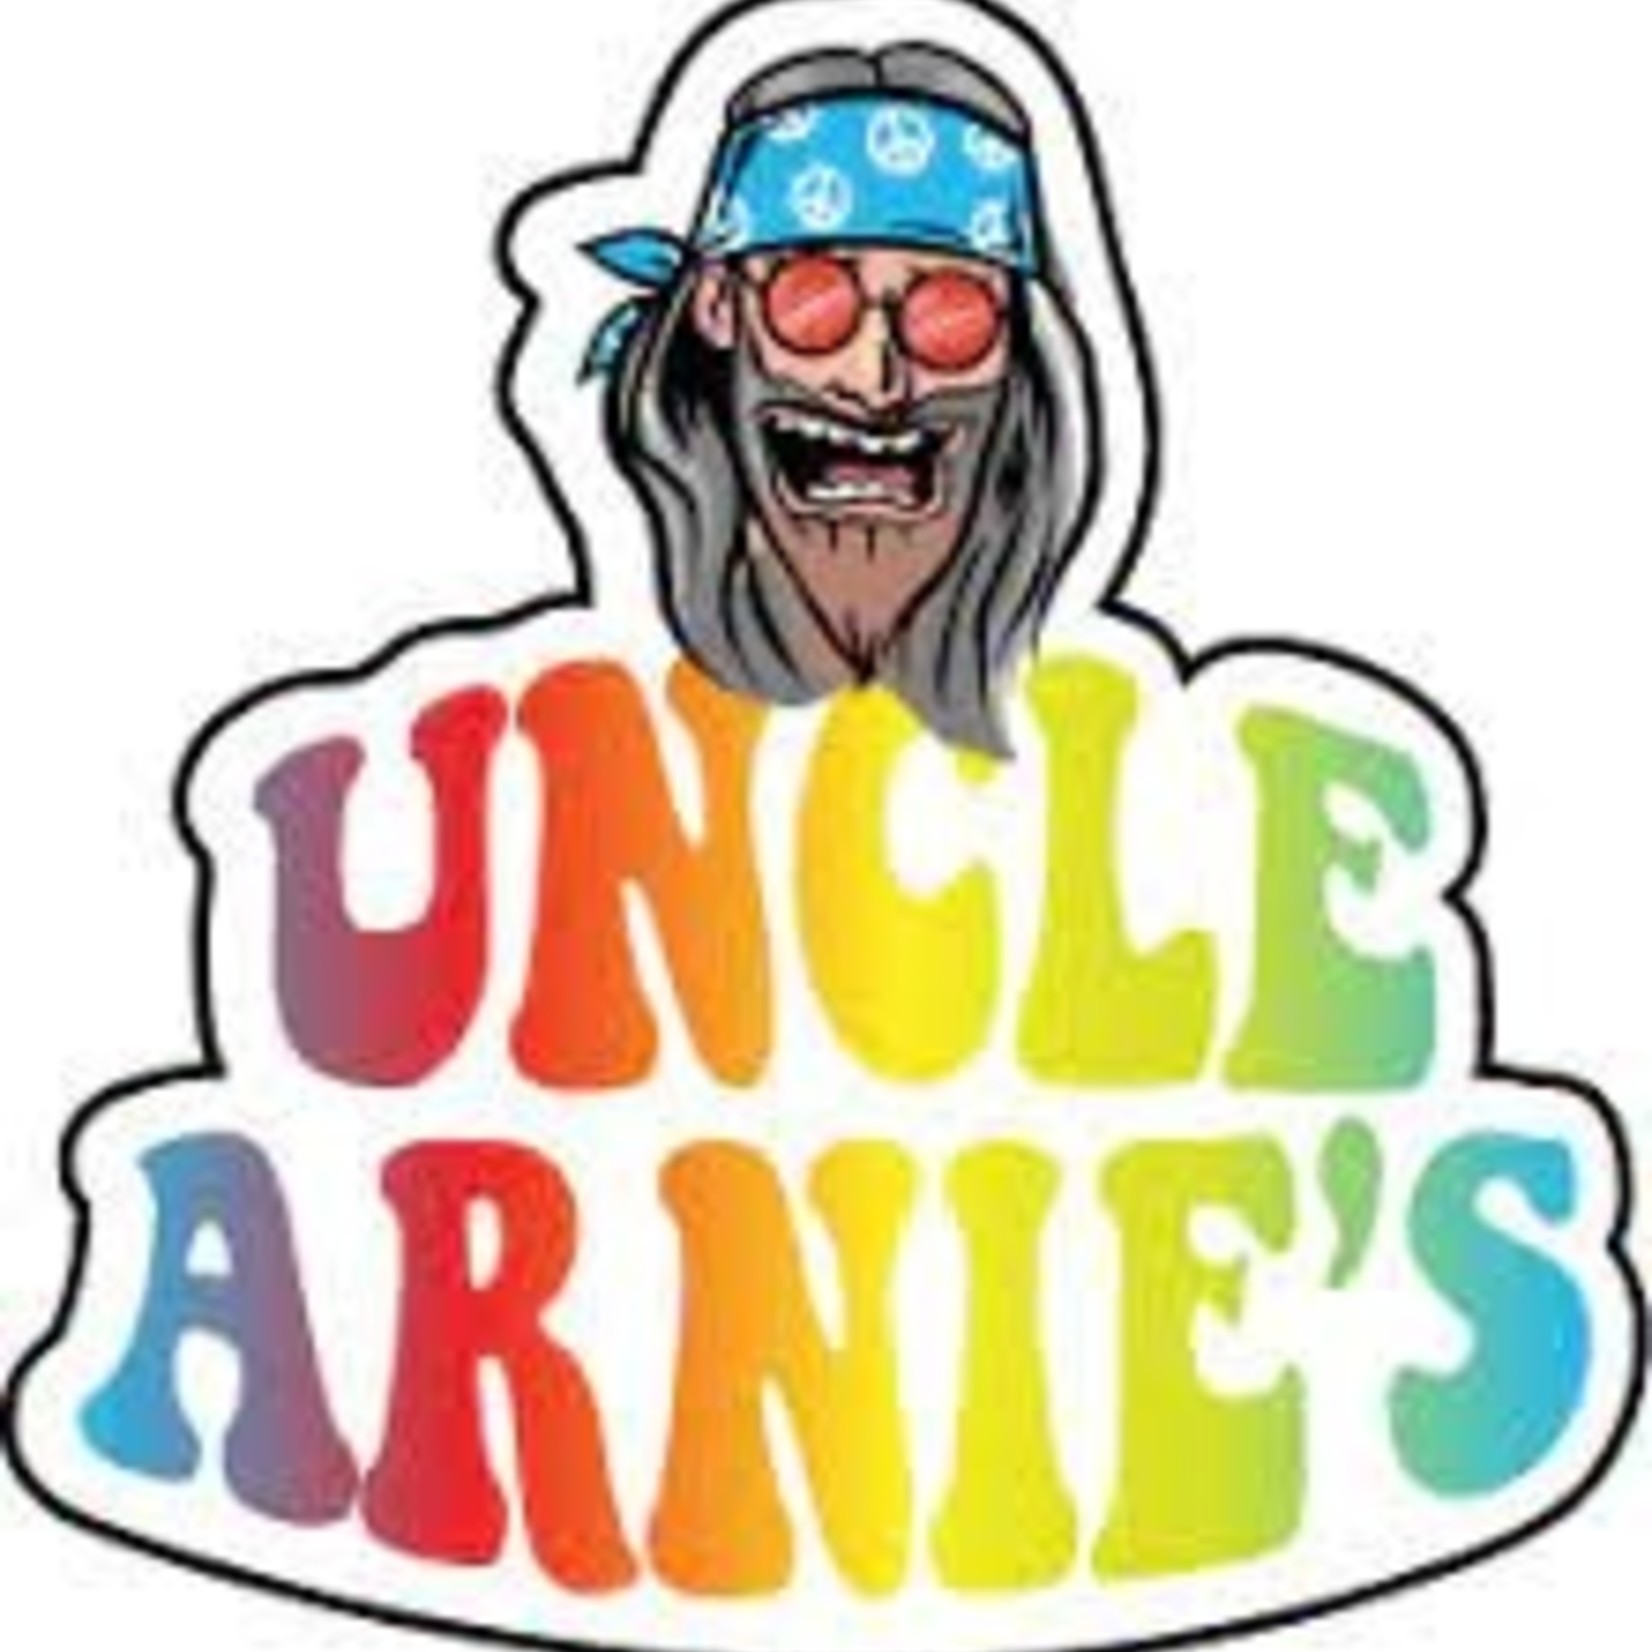 Uncle Arnie's - Apple Juice